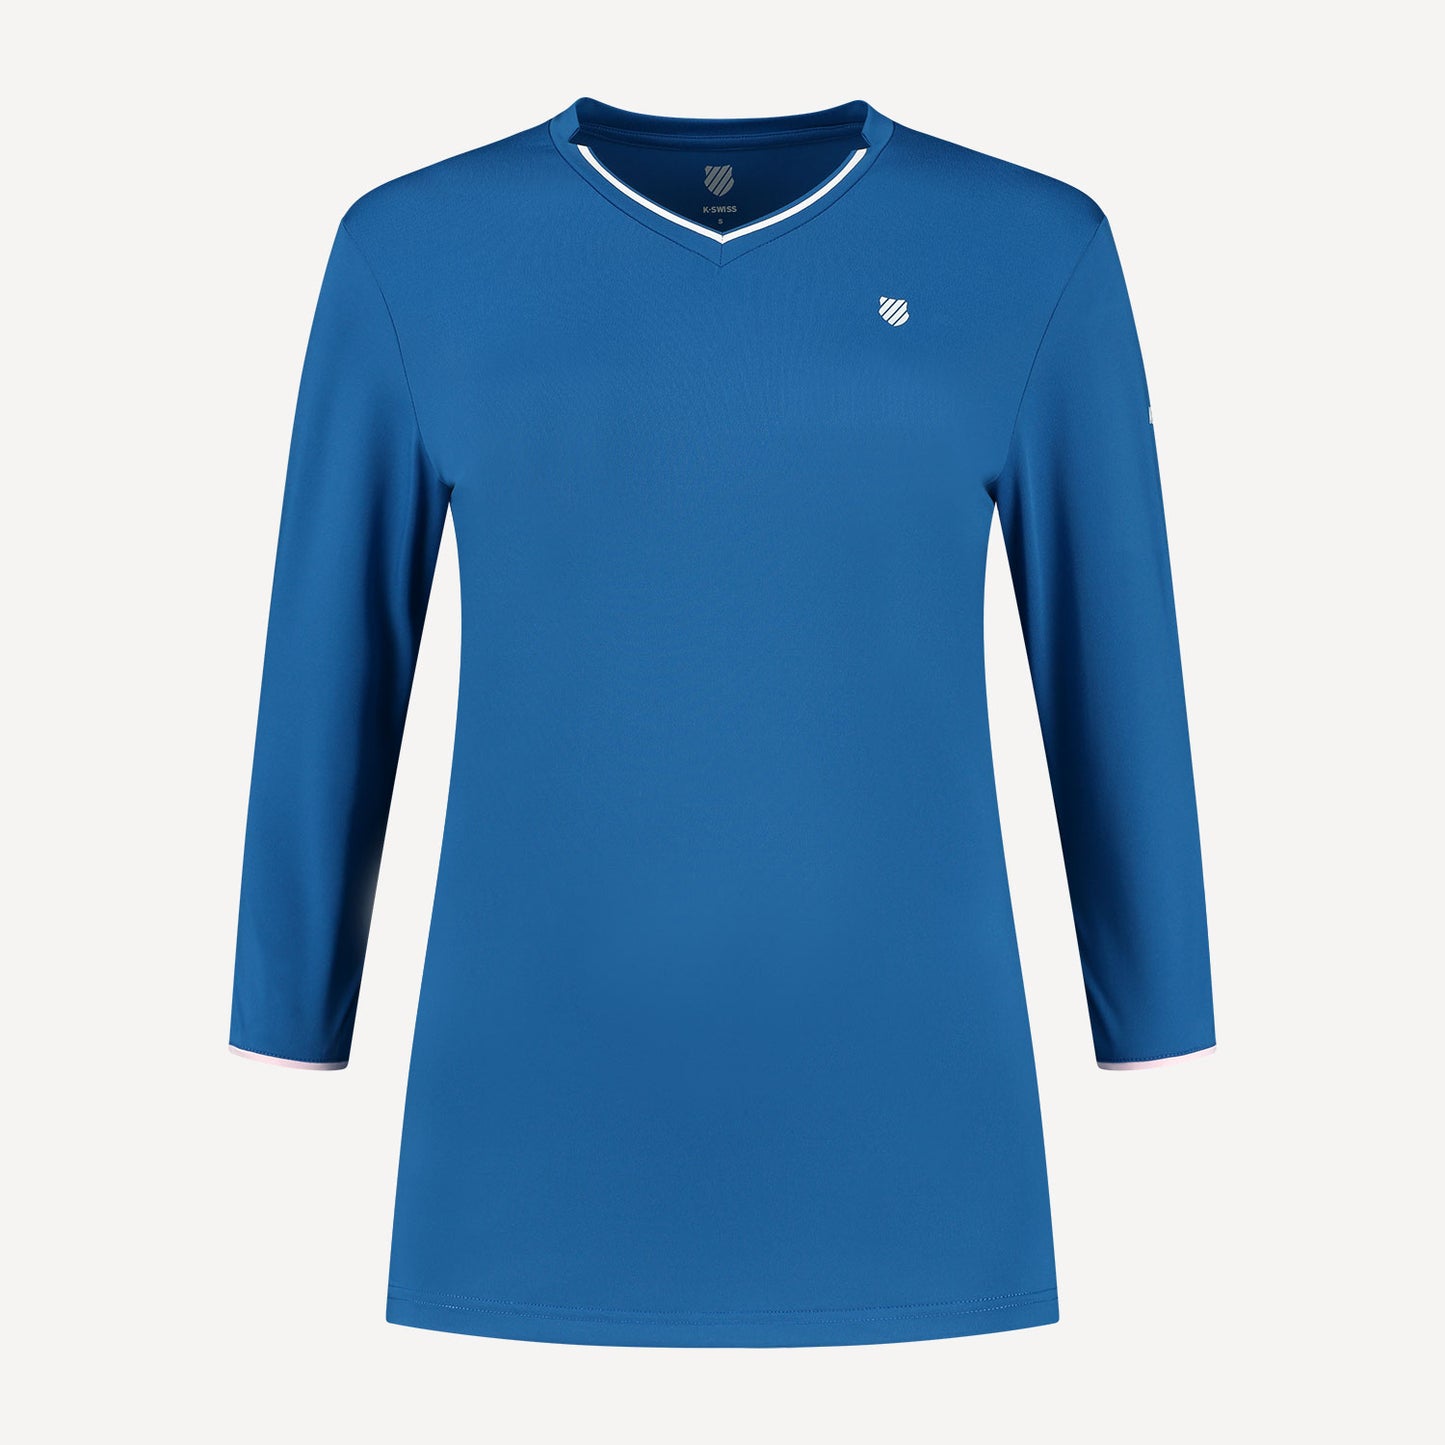 K-Swiss Hypercourt Women's Long-Sleeve Tennis Shirt Blue (1)